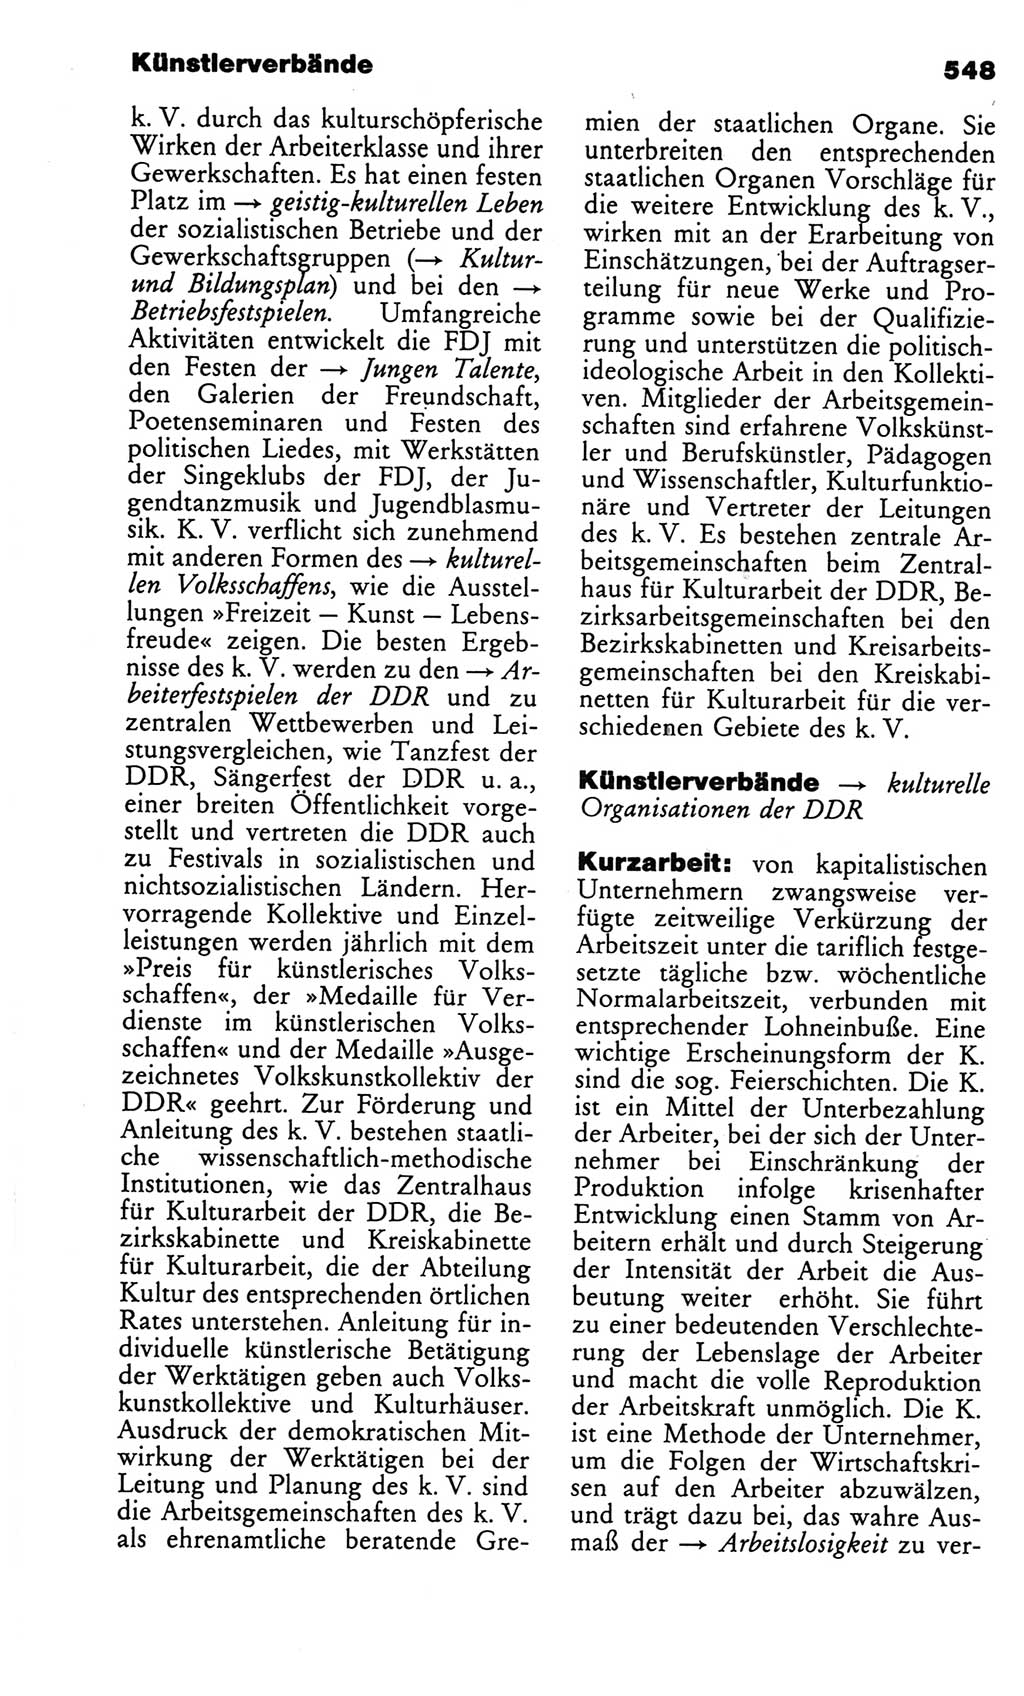 Kleines politisches Wörterbuch [Deutsche Demokratische Republik (DDR)] 1986, Seite 548 (Kl. pol. Wb. DDR 1986, S. 548)